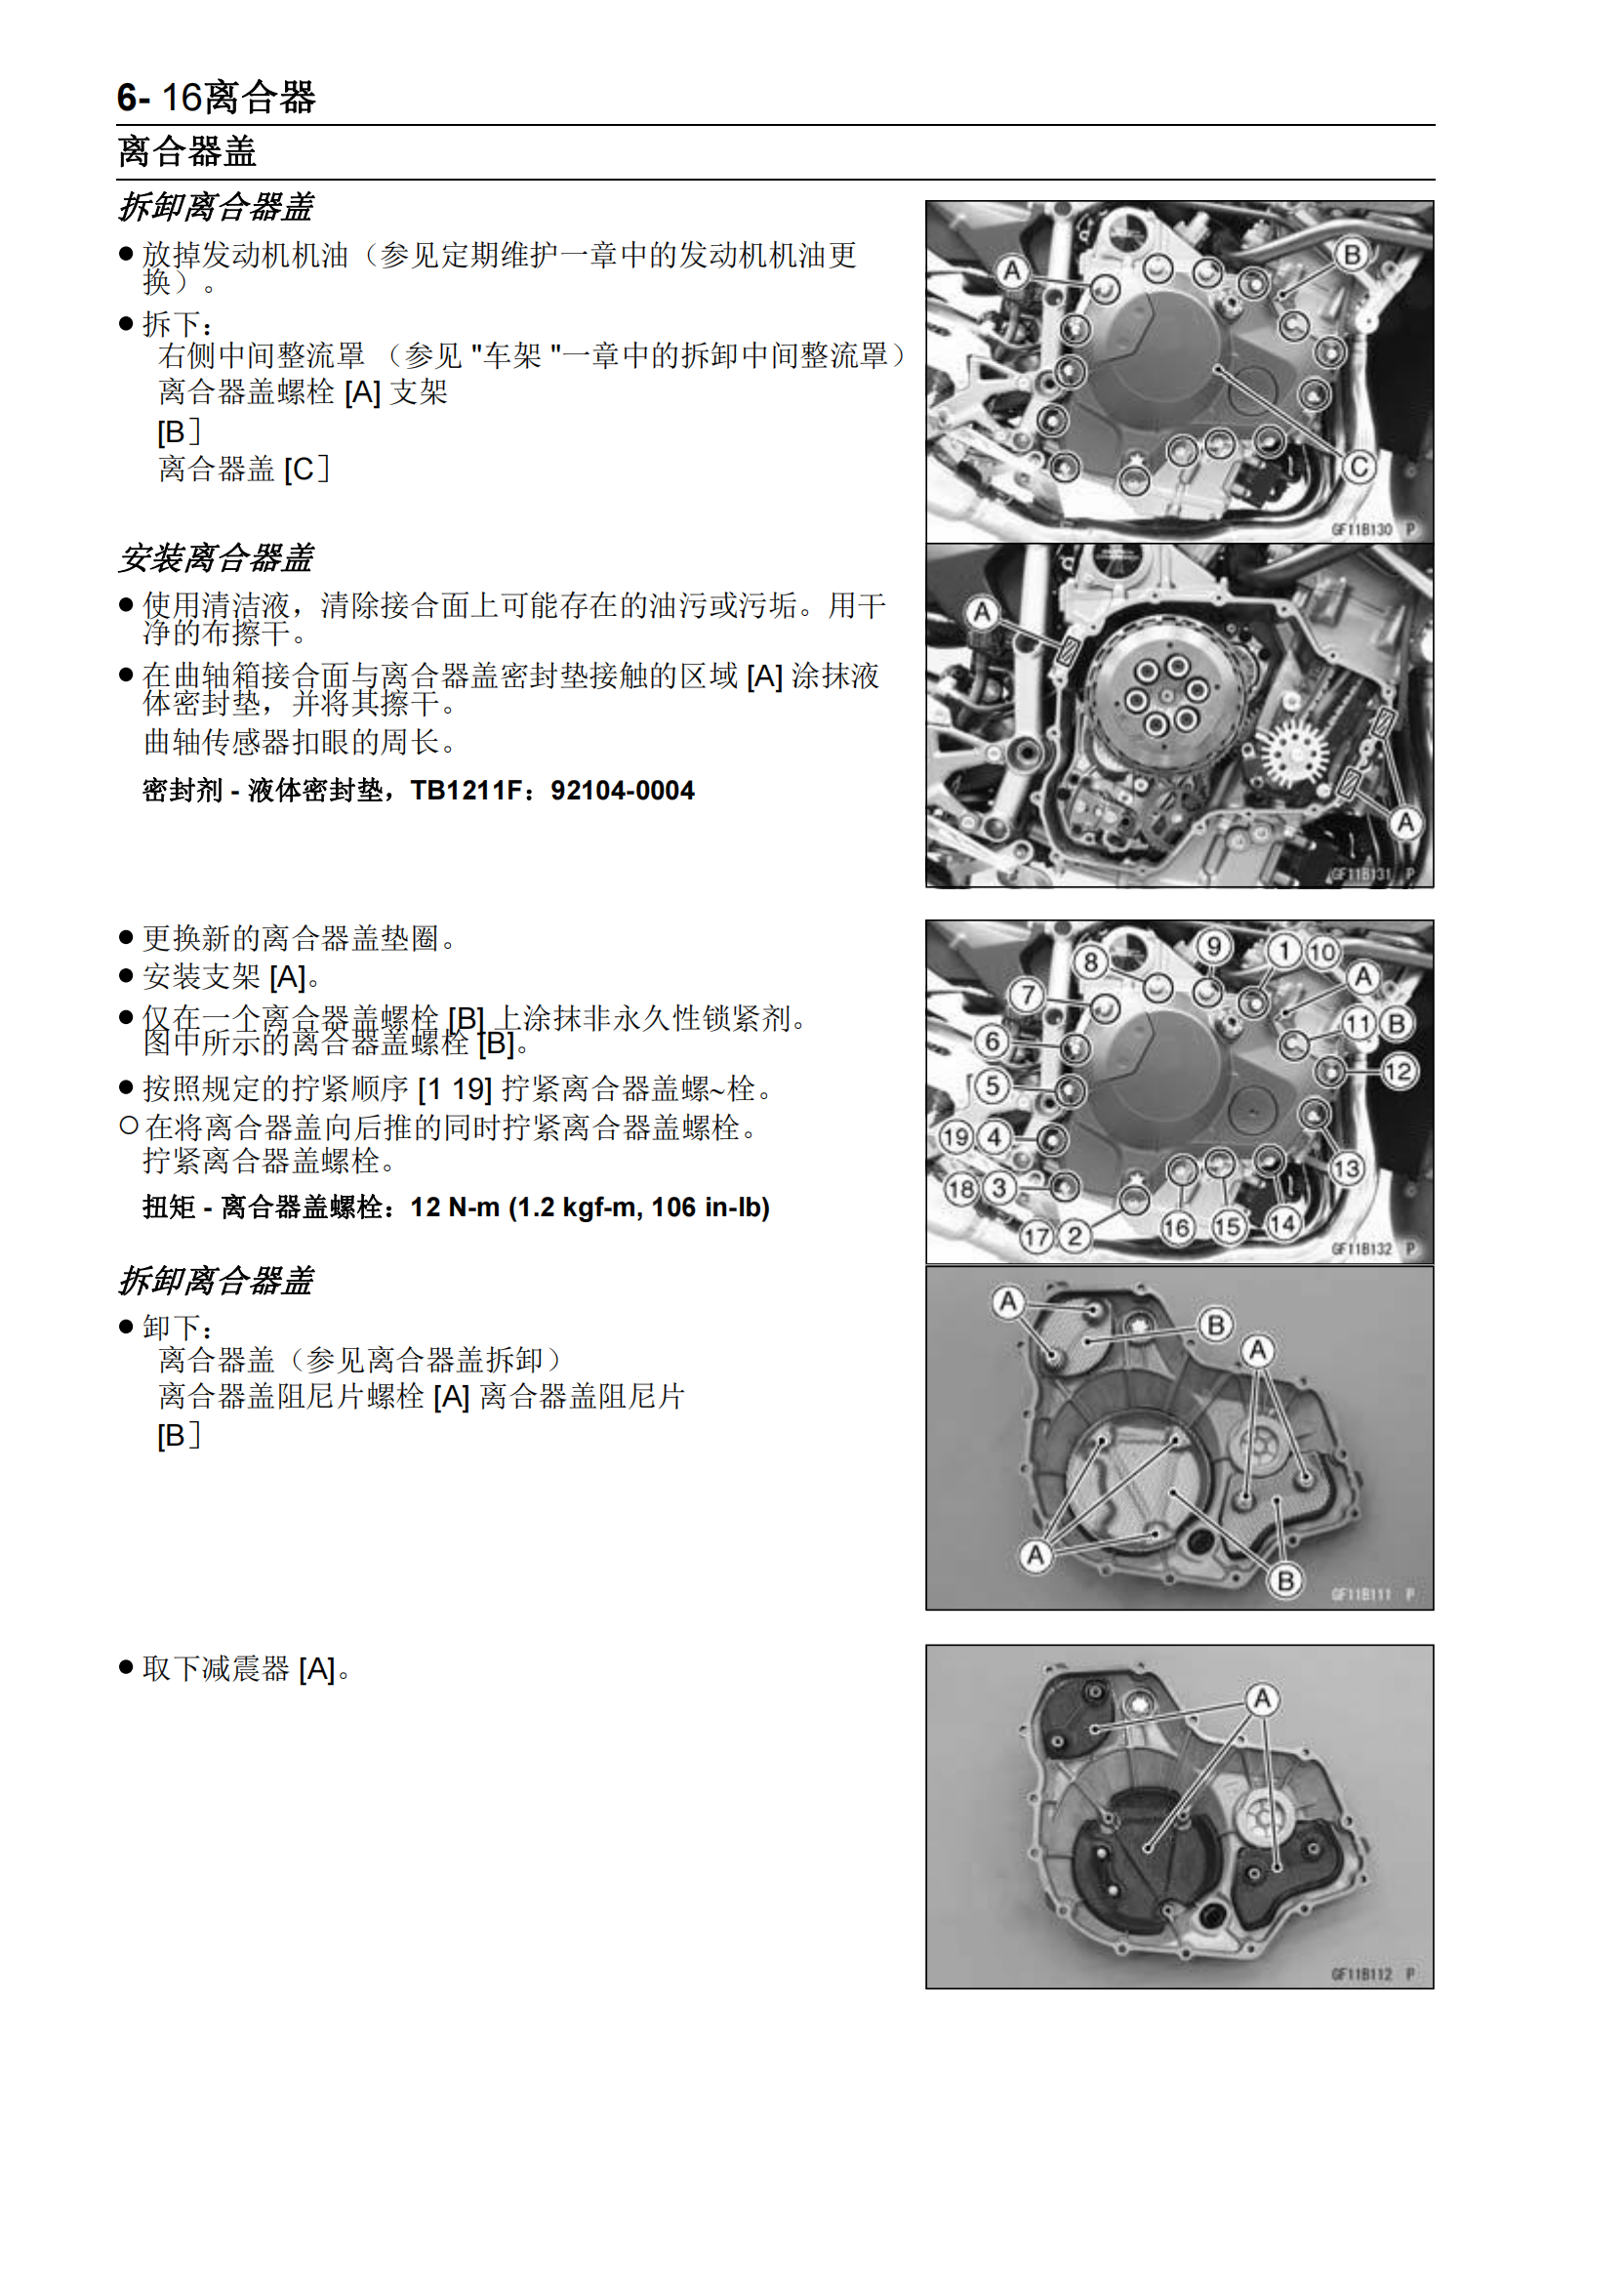 简体中文2015年川崎ninja h2r Kawasaki Ninja H2R维修手册插图4